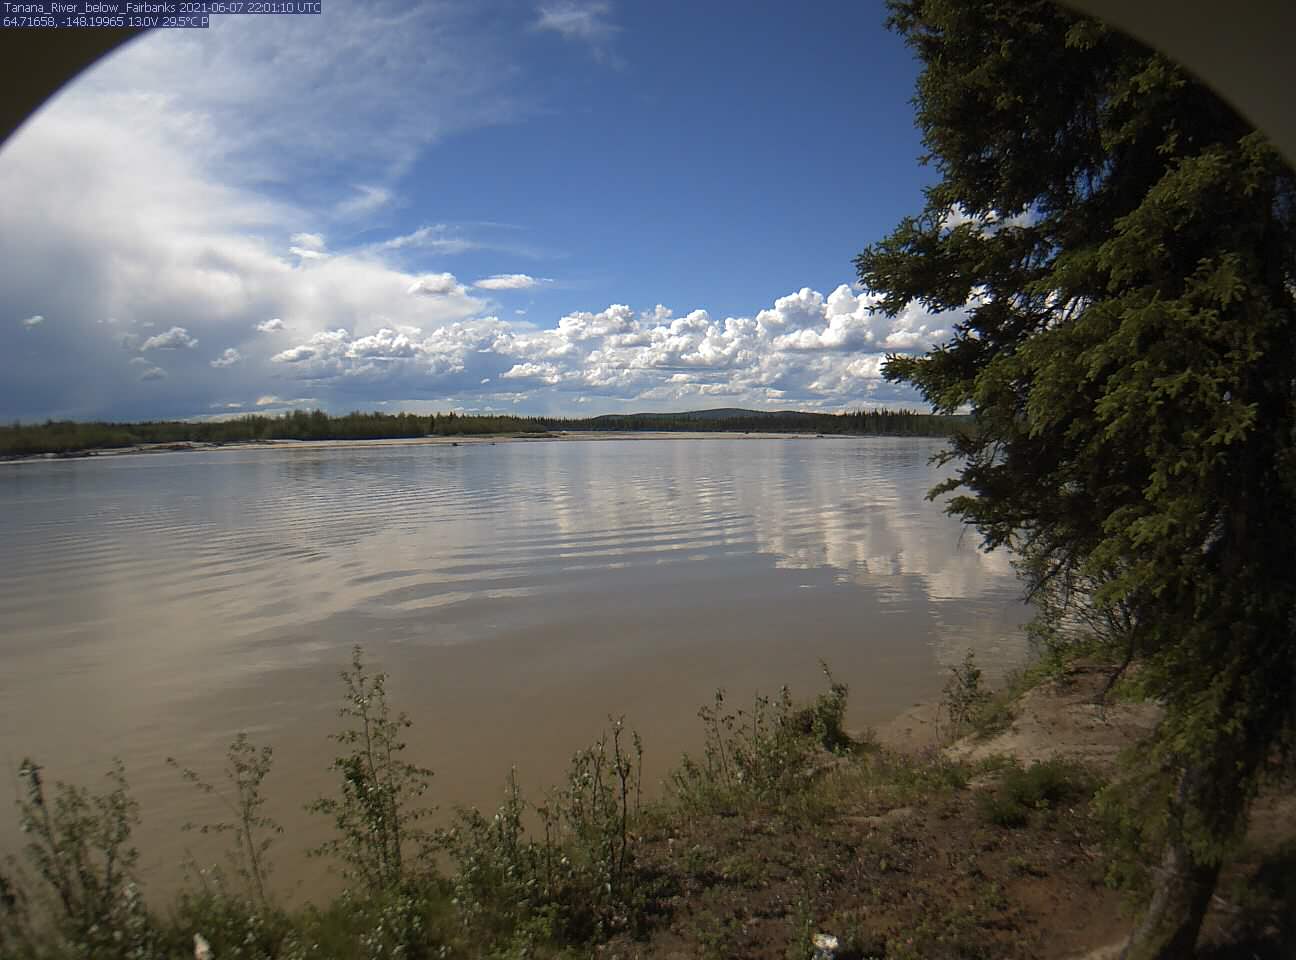 Tanana_River_below_Fairbanks_20210607220111.jpg